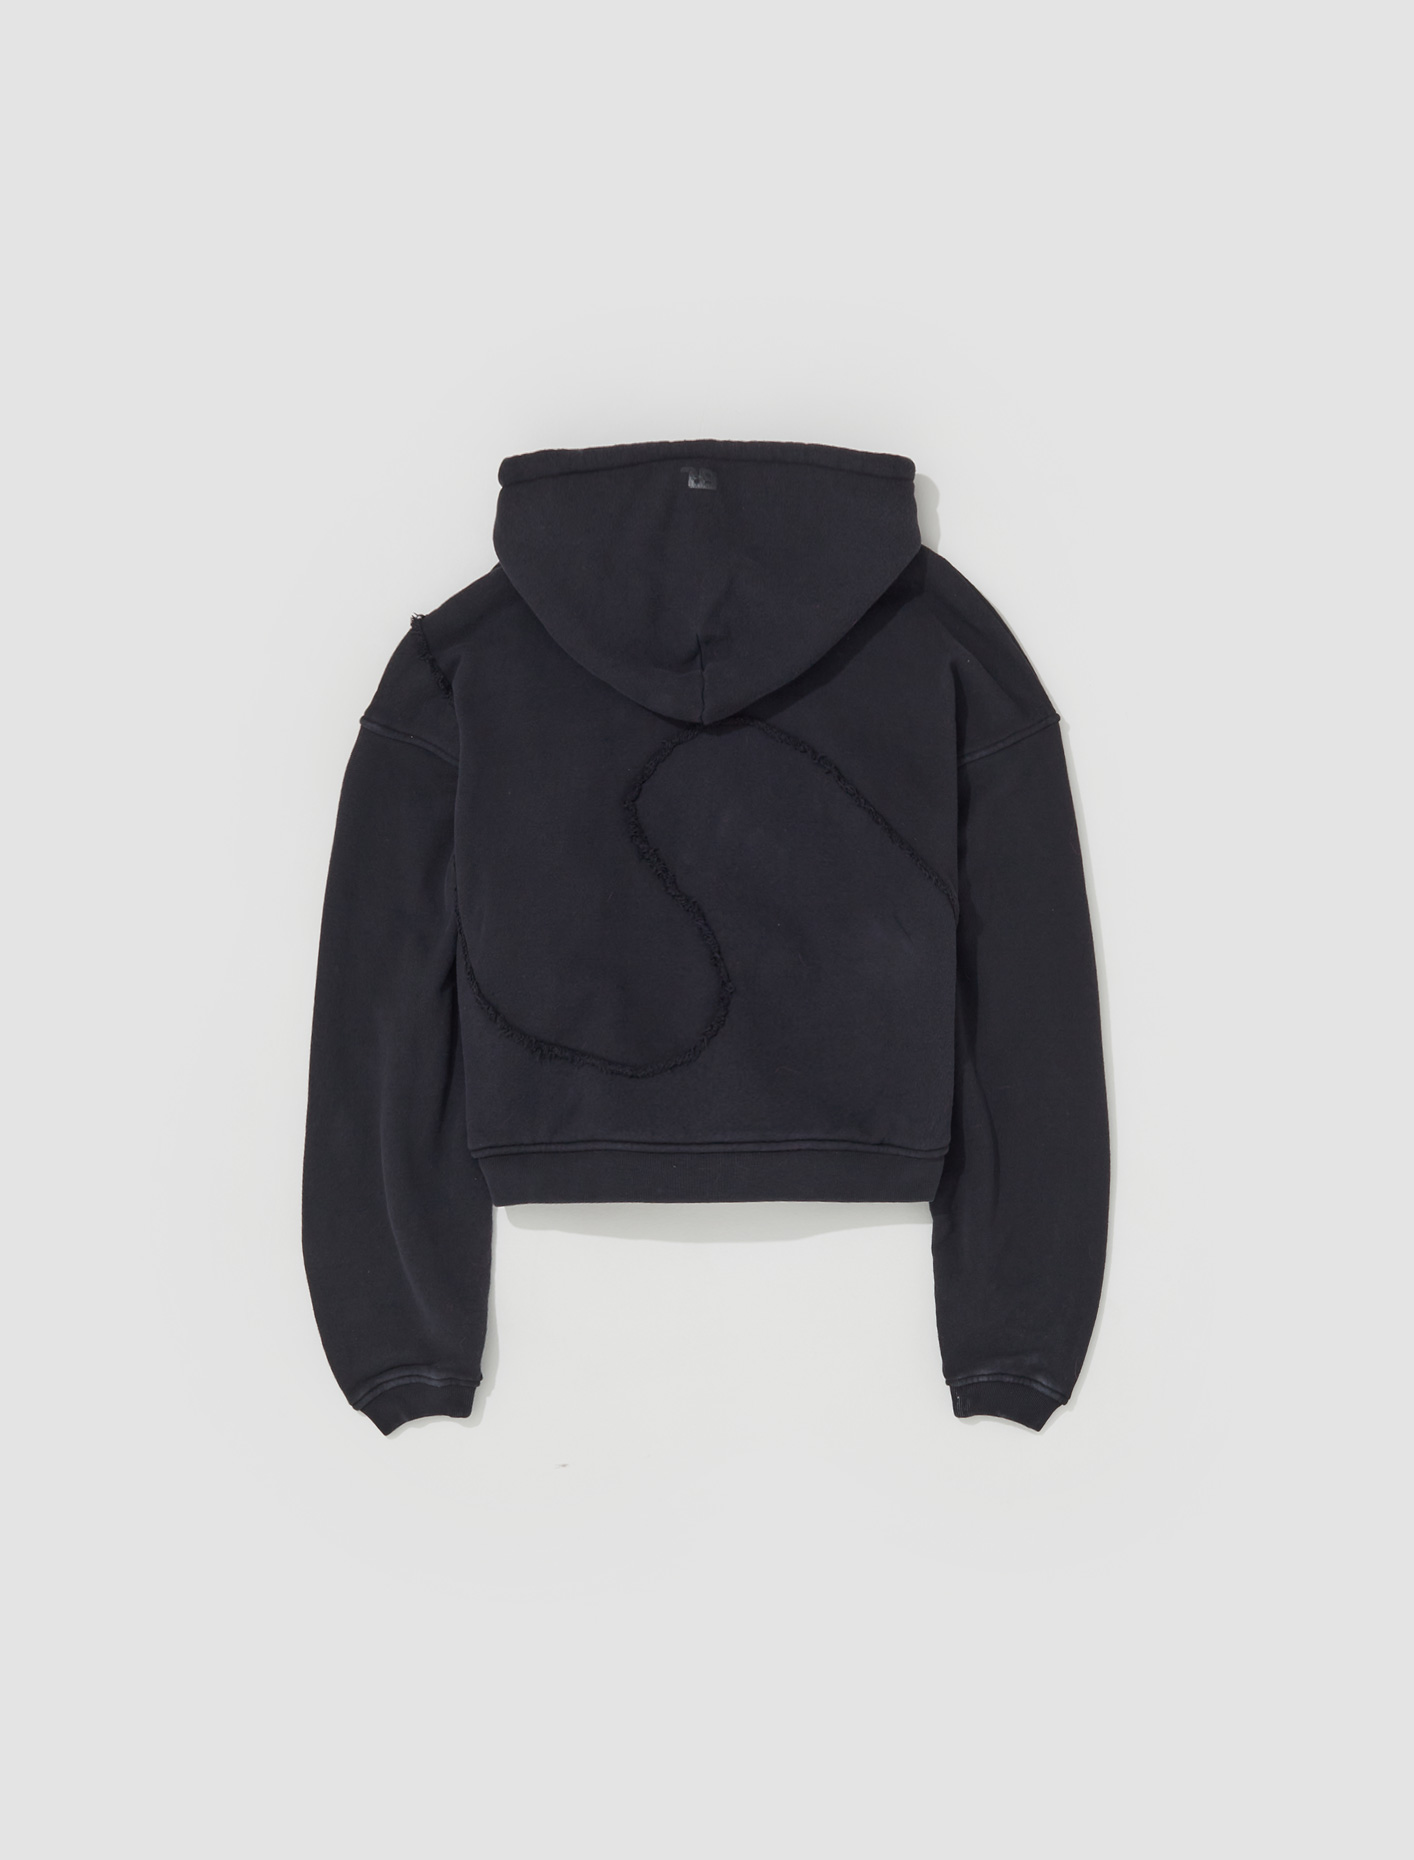 ERL Swirl Premium Fleece Hoodie in Black | Voo Store Berlin | Worldwide